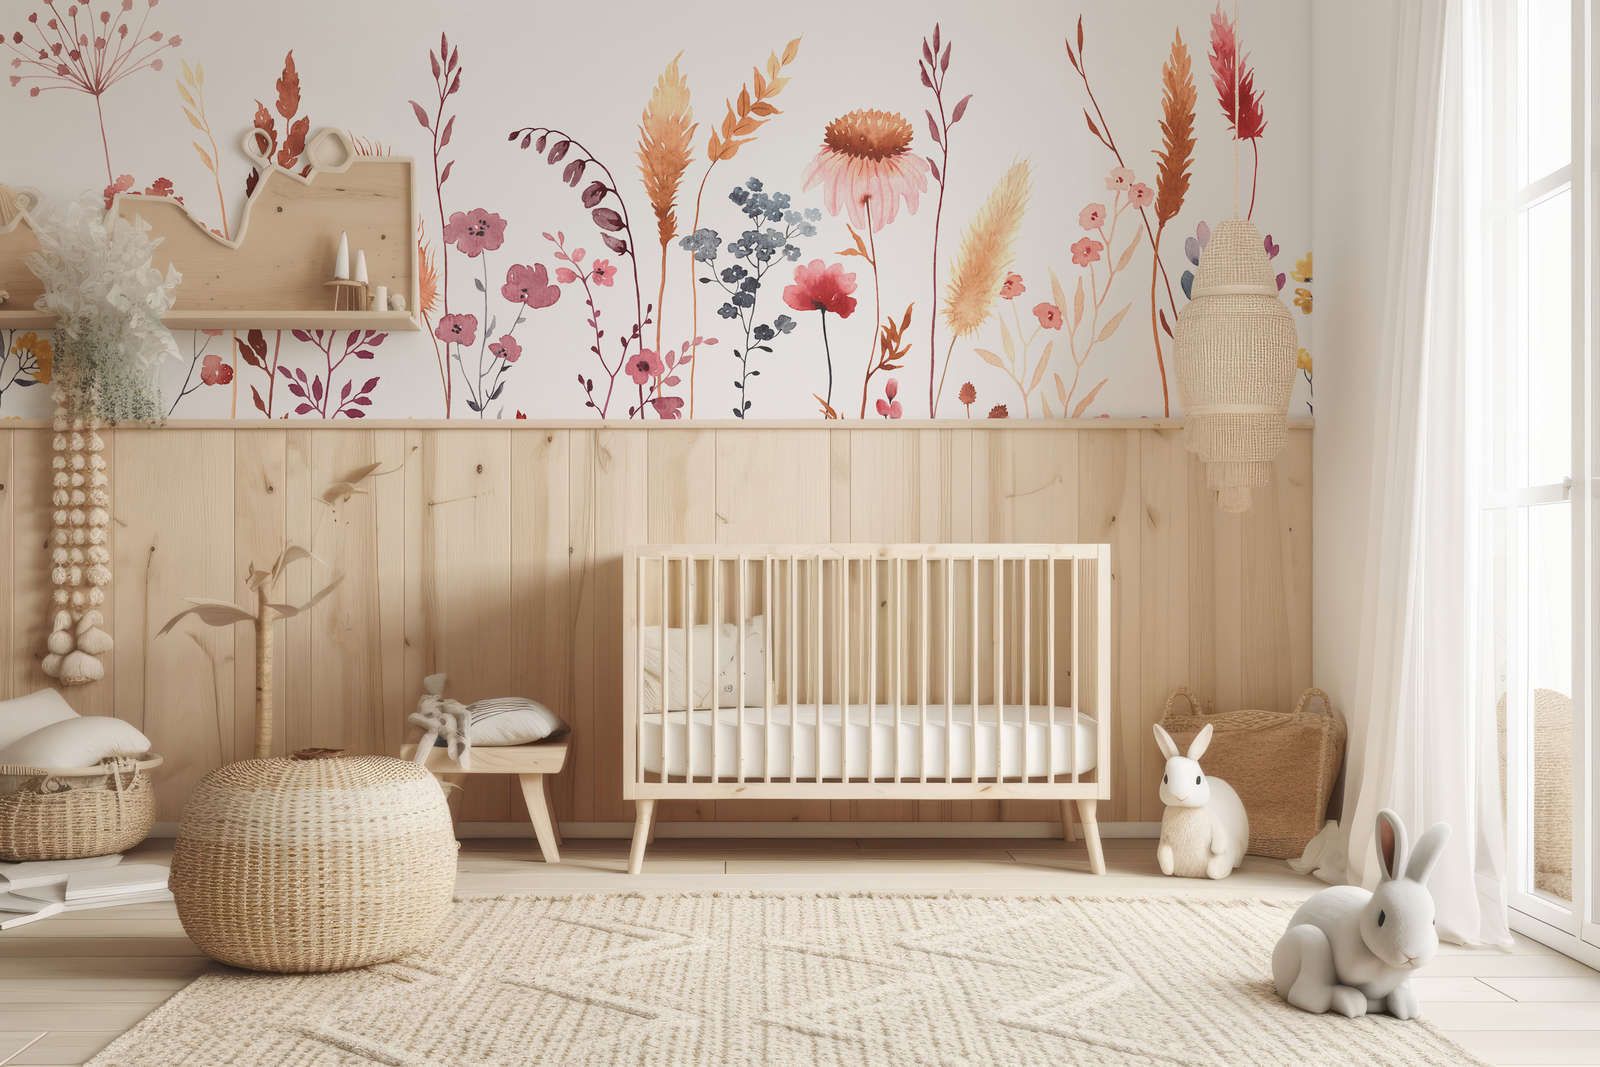             Fototapete fürs Kinderzimmer mit Blättern und Gräsern – Glattes & leicht glänzendes Vlies
        